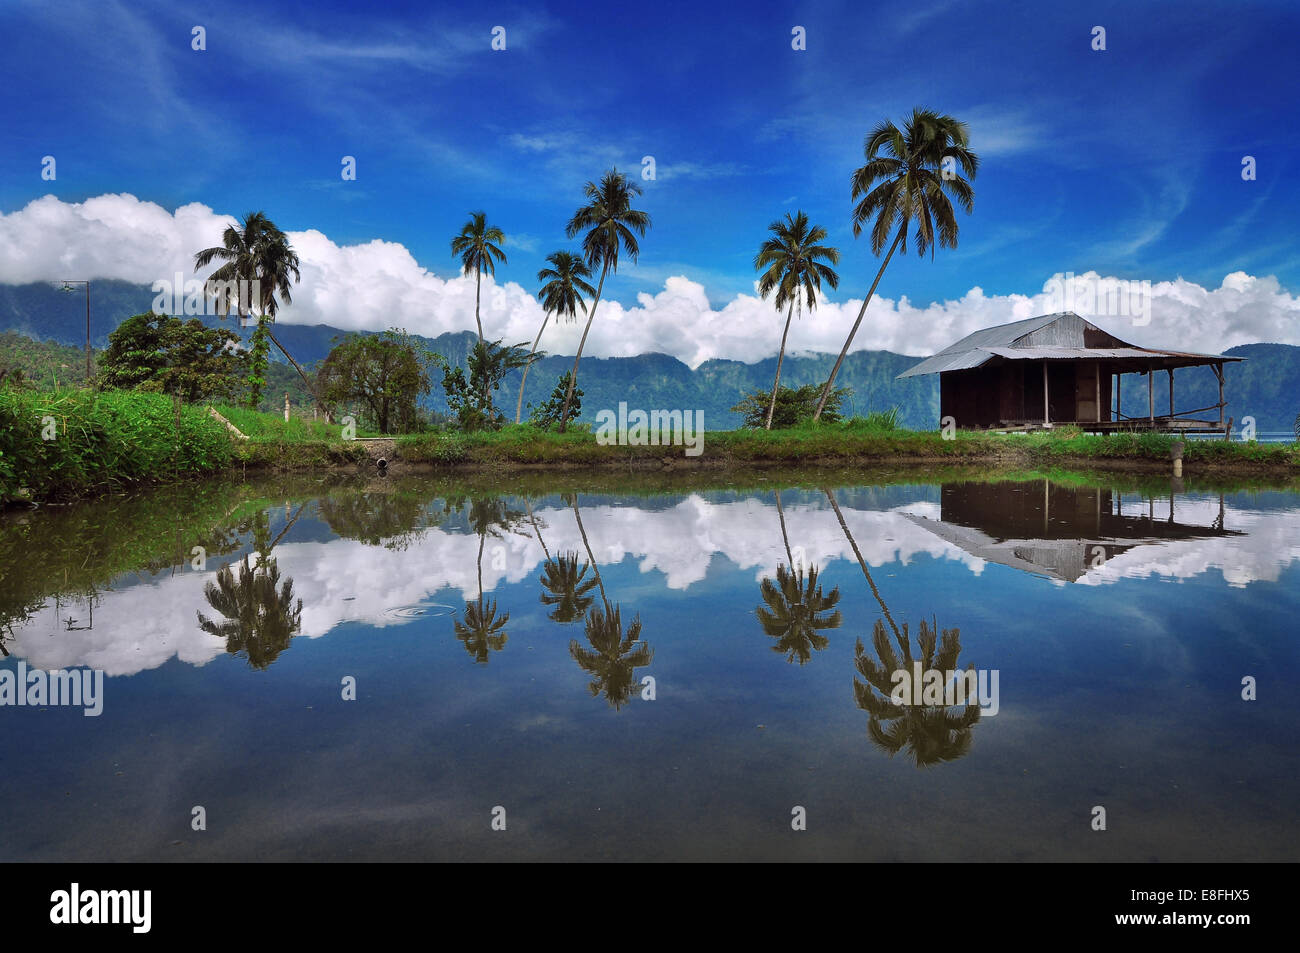 L'Indonésie, de Padang, région du lac Maninjau depuis, la réflexion des palmiers Banque D'Images